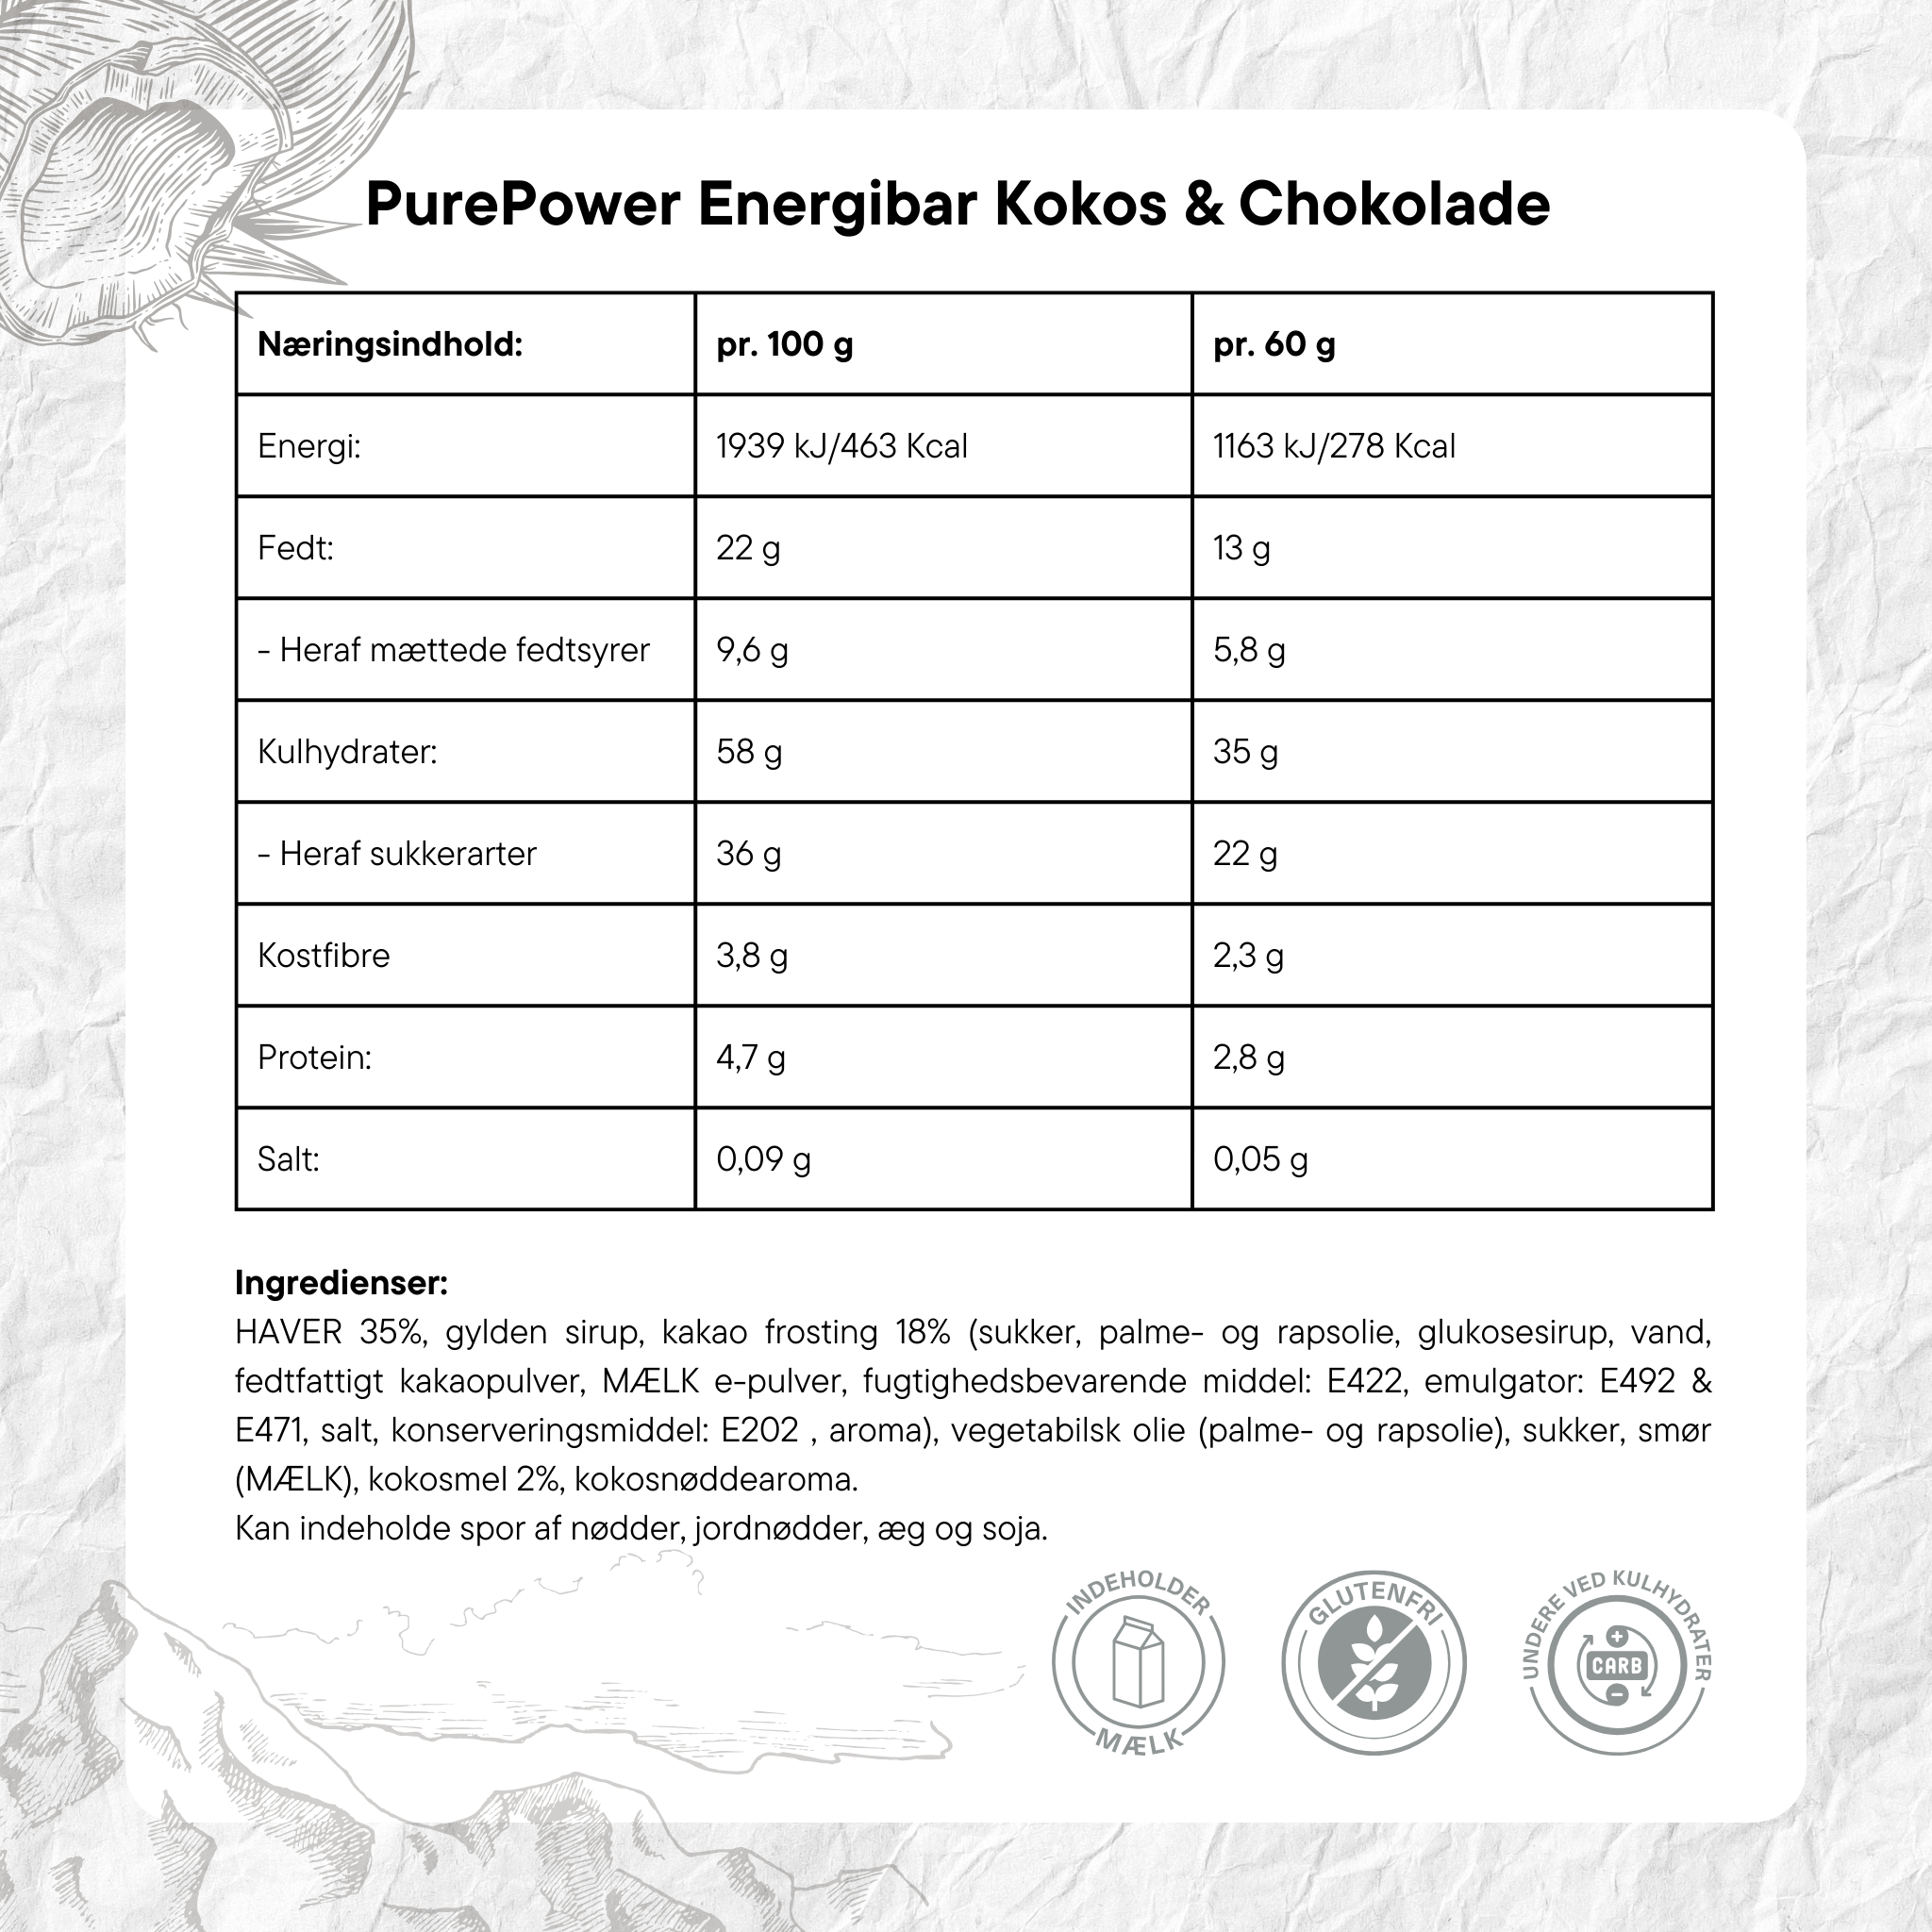 PurePower Energibar Kokos/Chokolade (12x60g) - DATOVARE